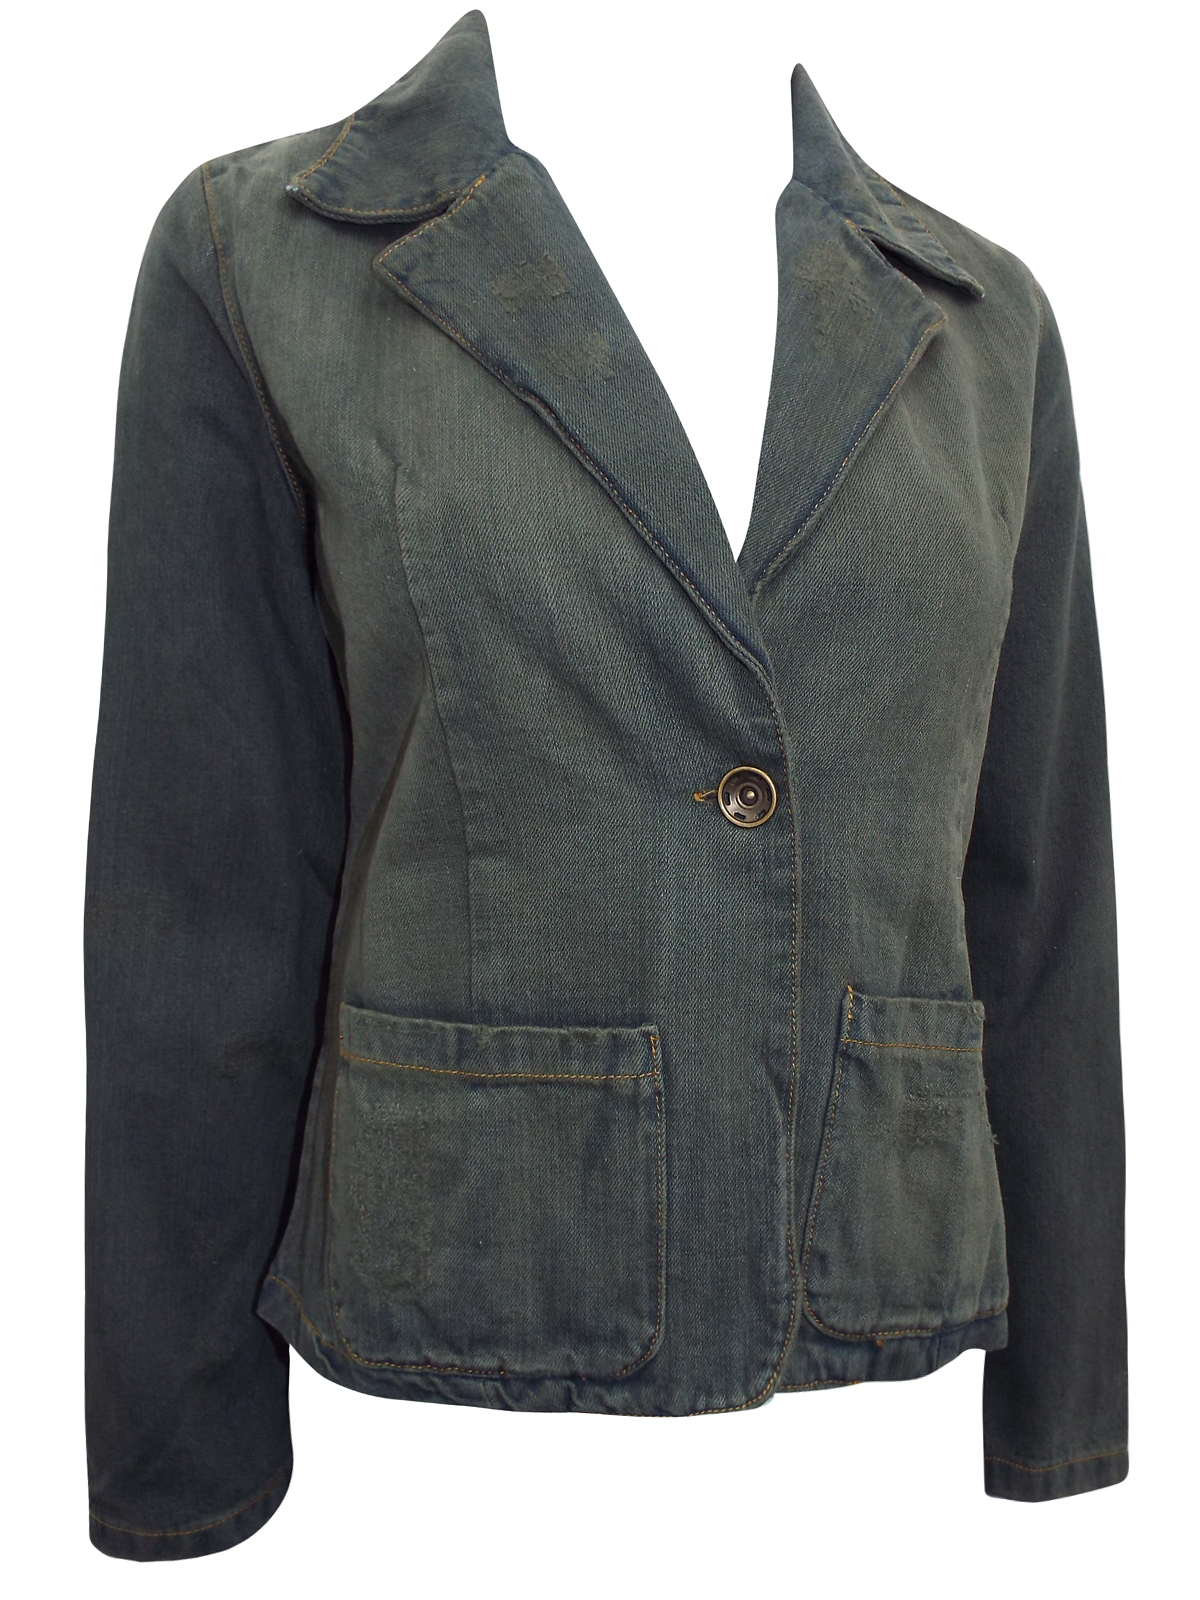 Sarah Chole - - Sarah Chole GREEN Distressed Denim Blazer Jacket - Size ...